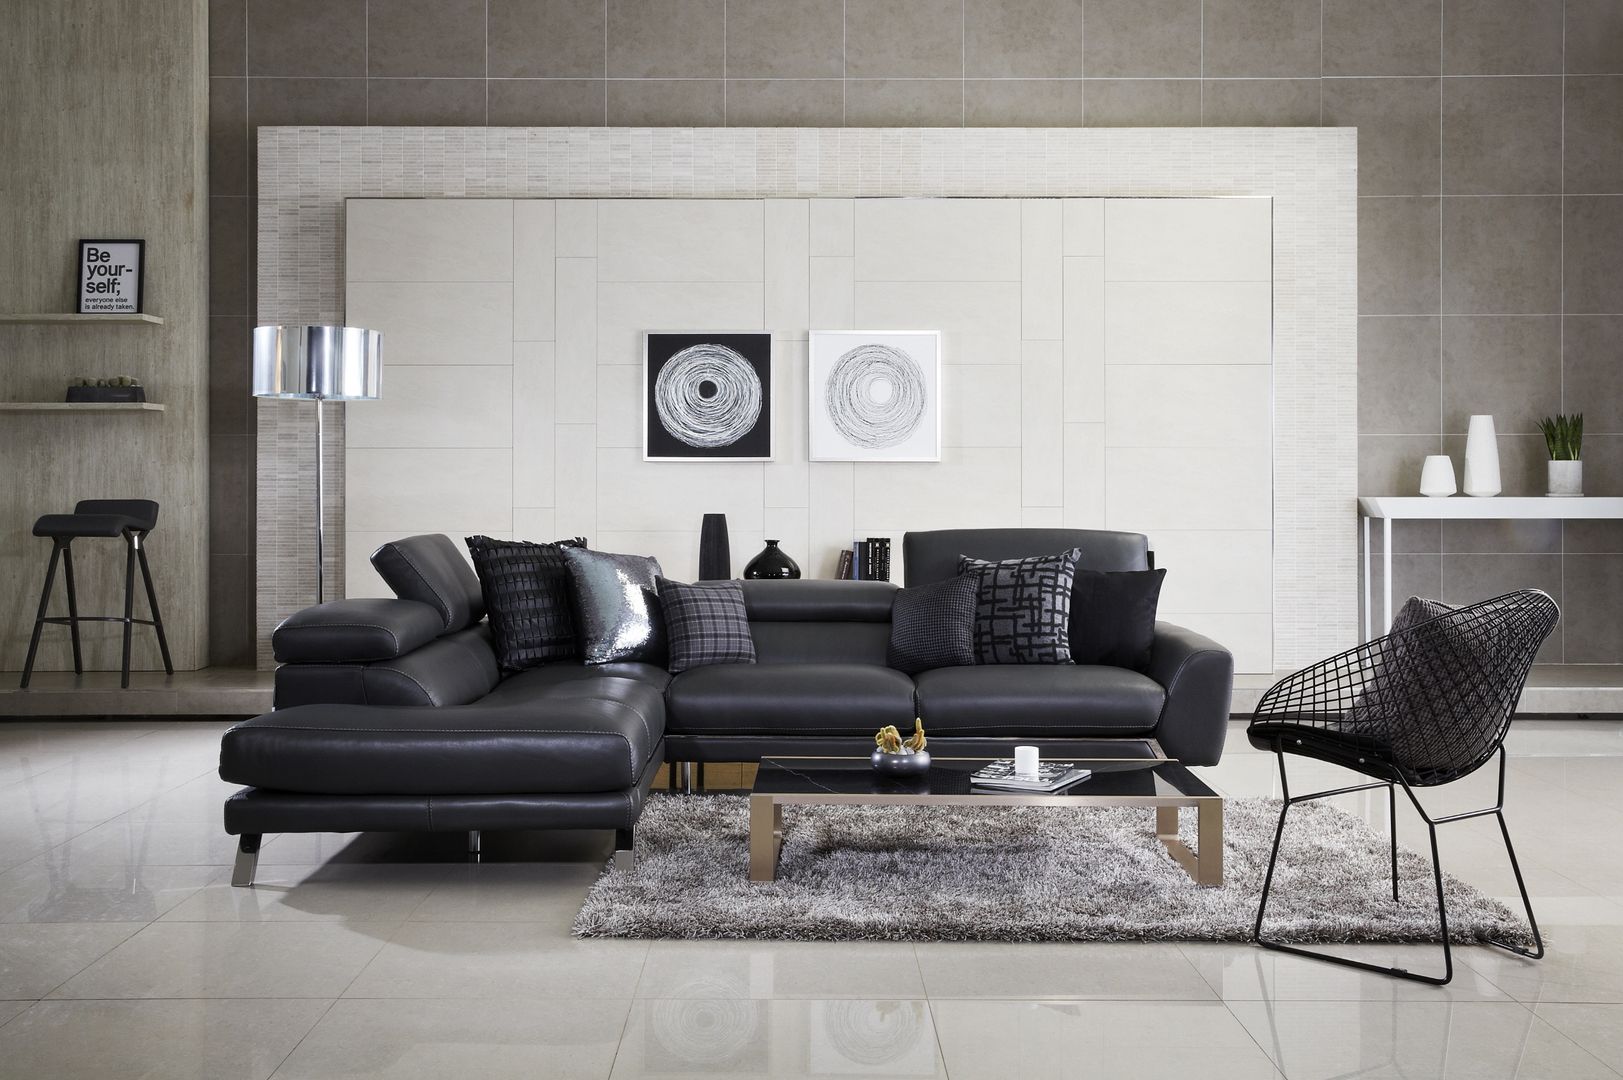 최고급 이태리산 가죽 소파와 돌소파의 웰빙을 하나로 즐길 수 있는 리스톤 이태리 스톤 소파, 리스톤 리스톤 Modern living room Sofas & armchairs